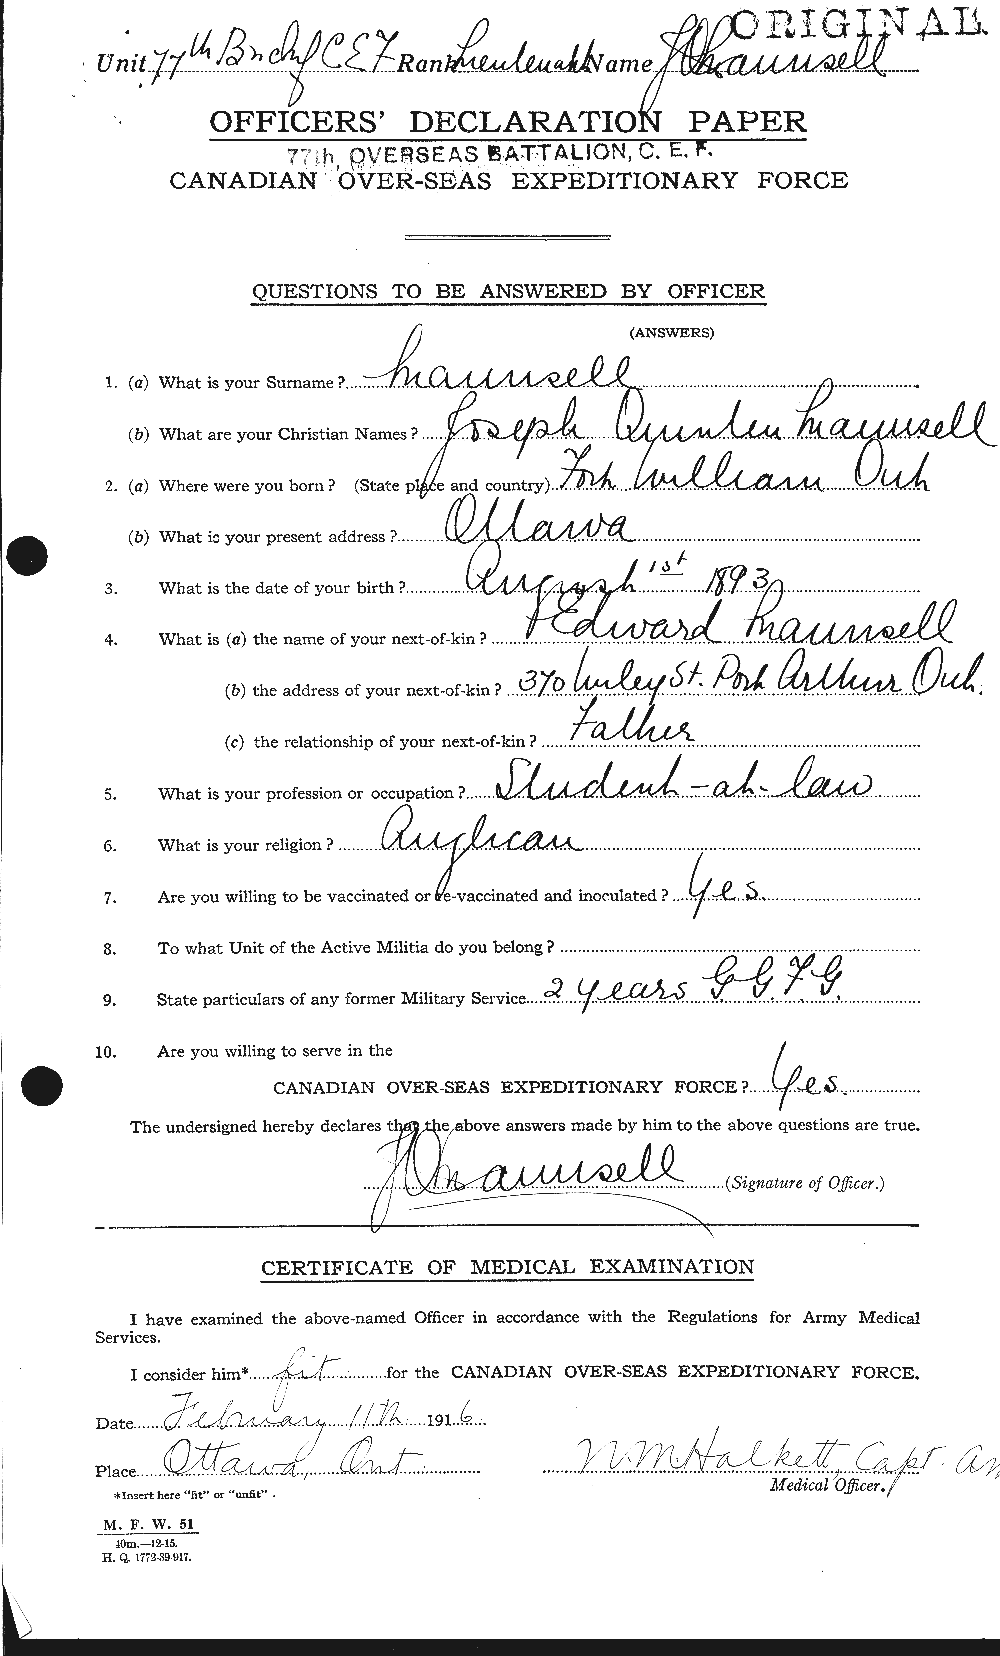 Dossiers du Personnel de la Première Guerre mondiale - CEC 487822a